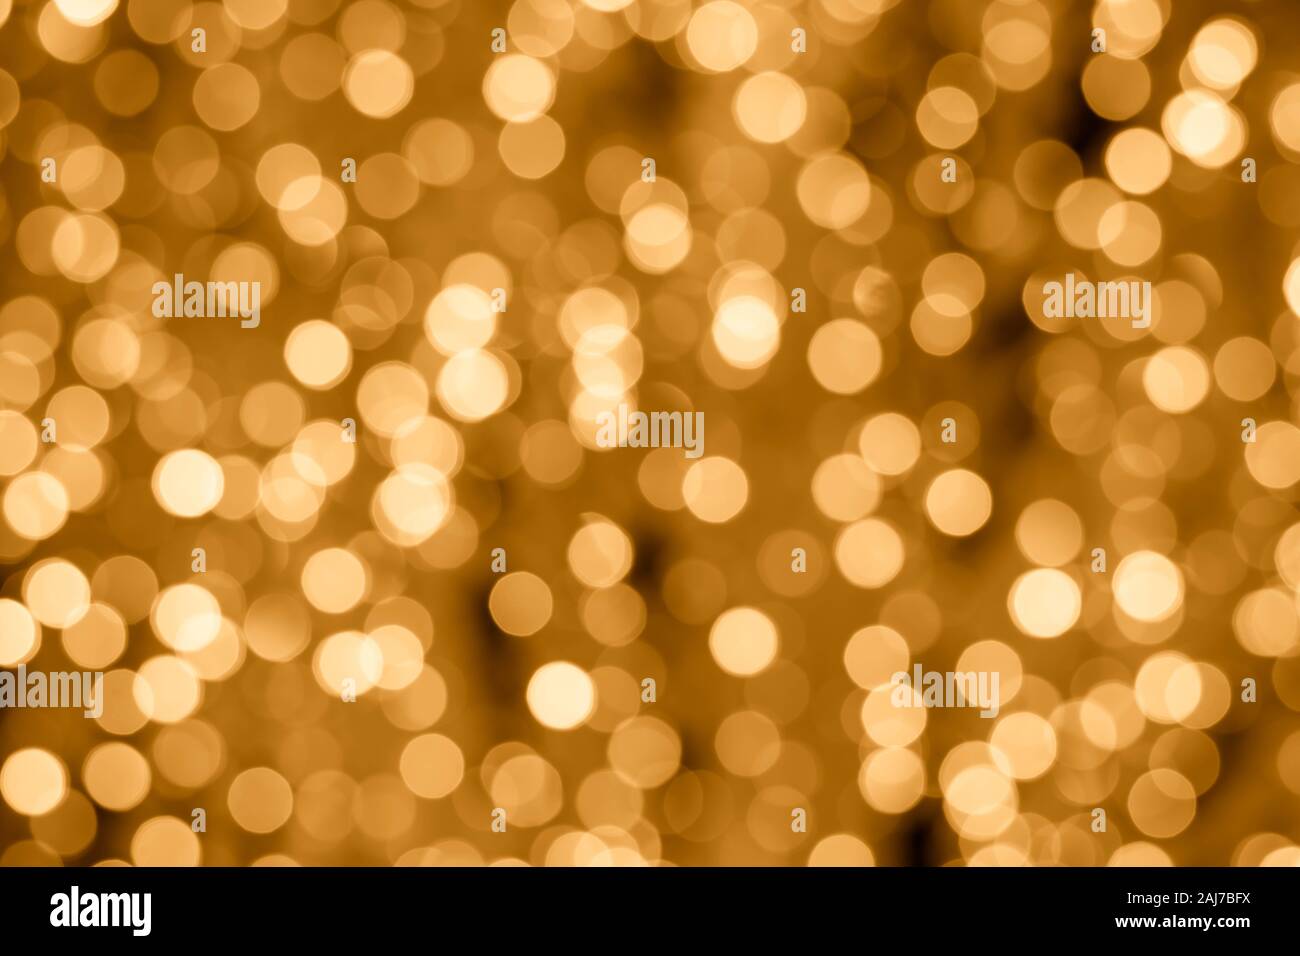 Abstract sfondo dorato con luci bokeh di fondo. Gli sfondi di illuminato. Effetto sfocato, incandescente texture, defocalizzata giallo cerchi lucido Foto Stock